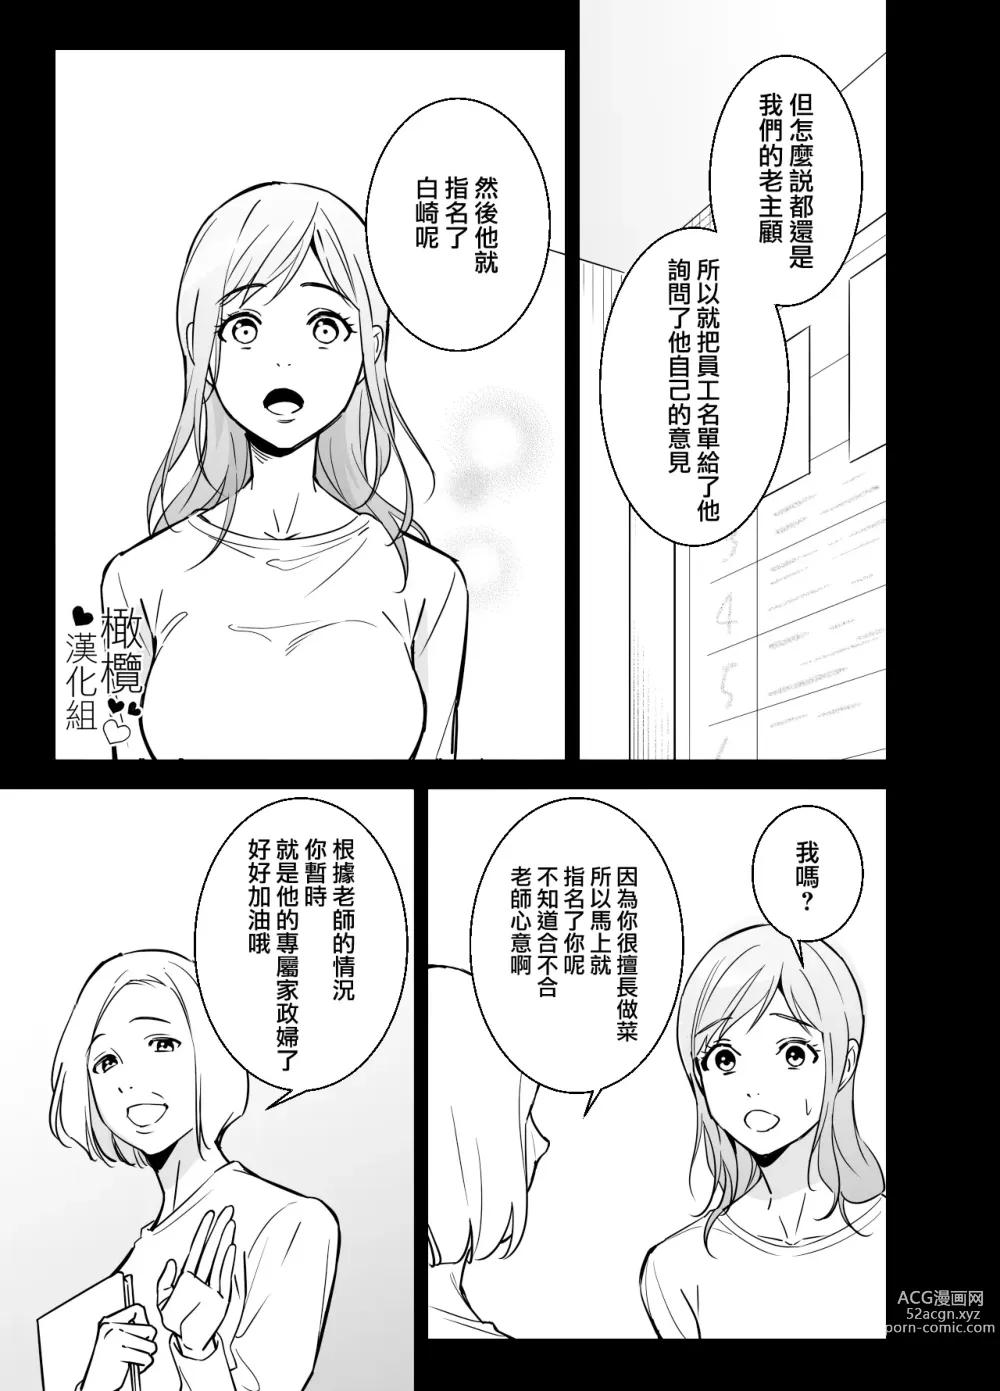 Page 6 of doujinshi 处男小说家和家政妇小姐